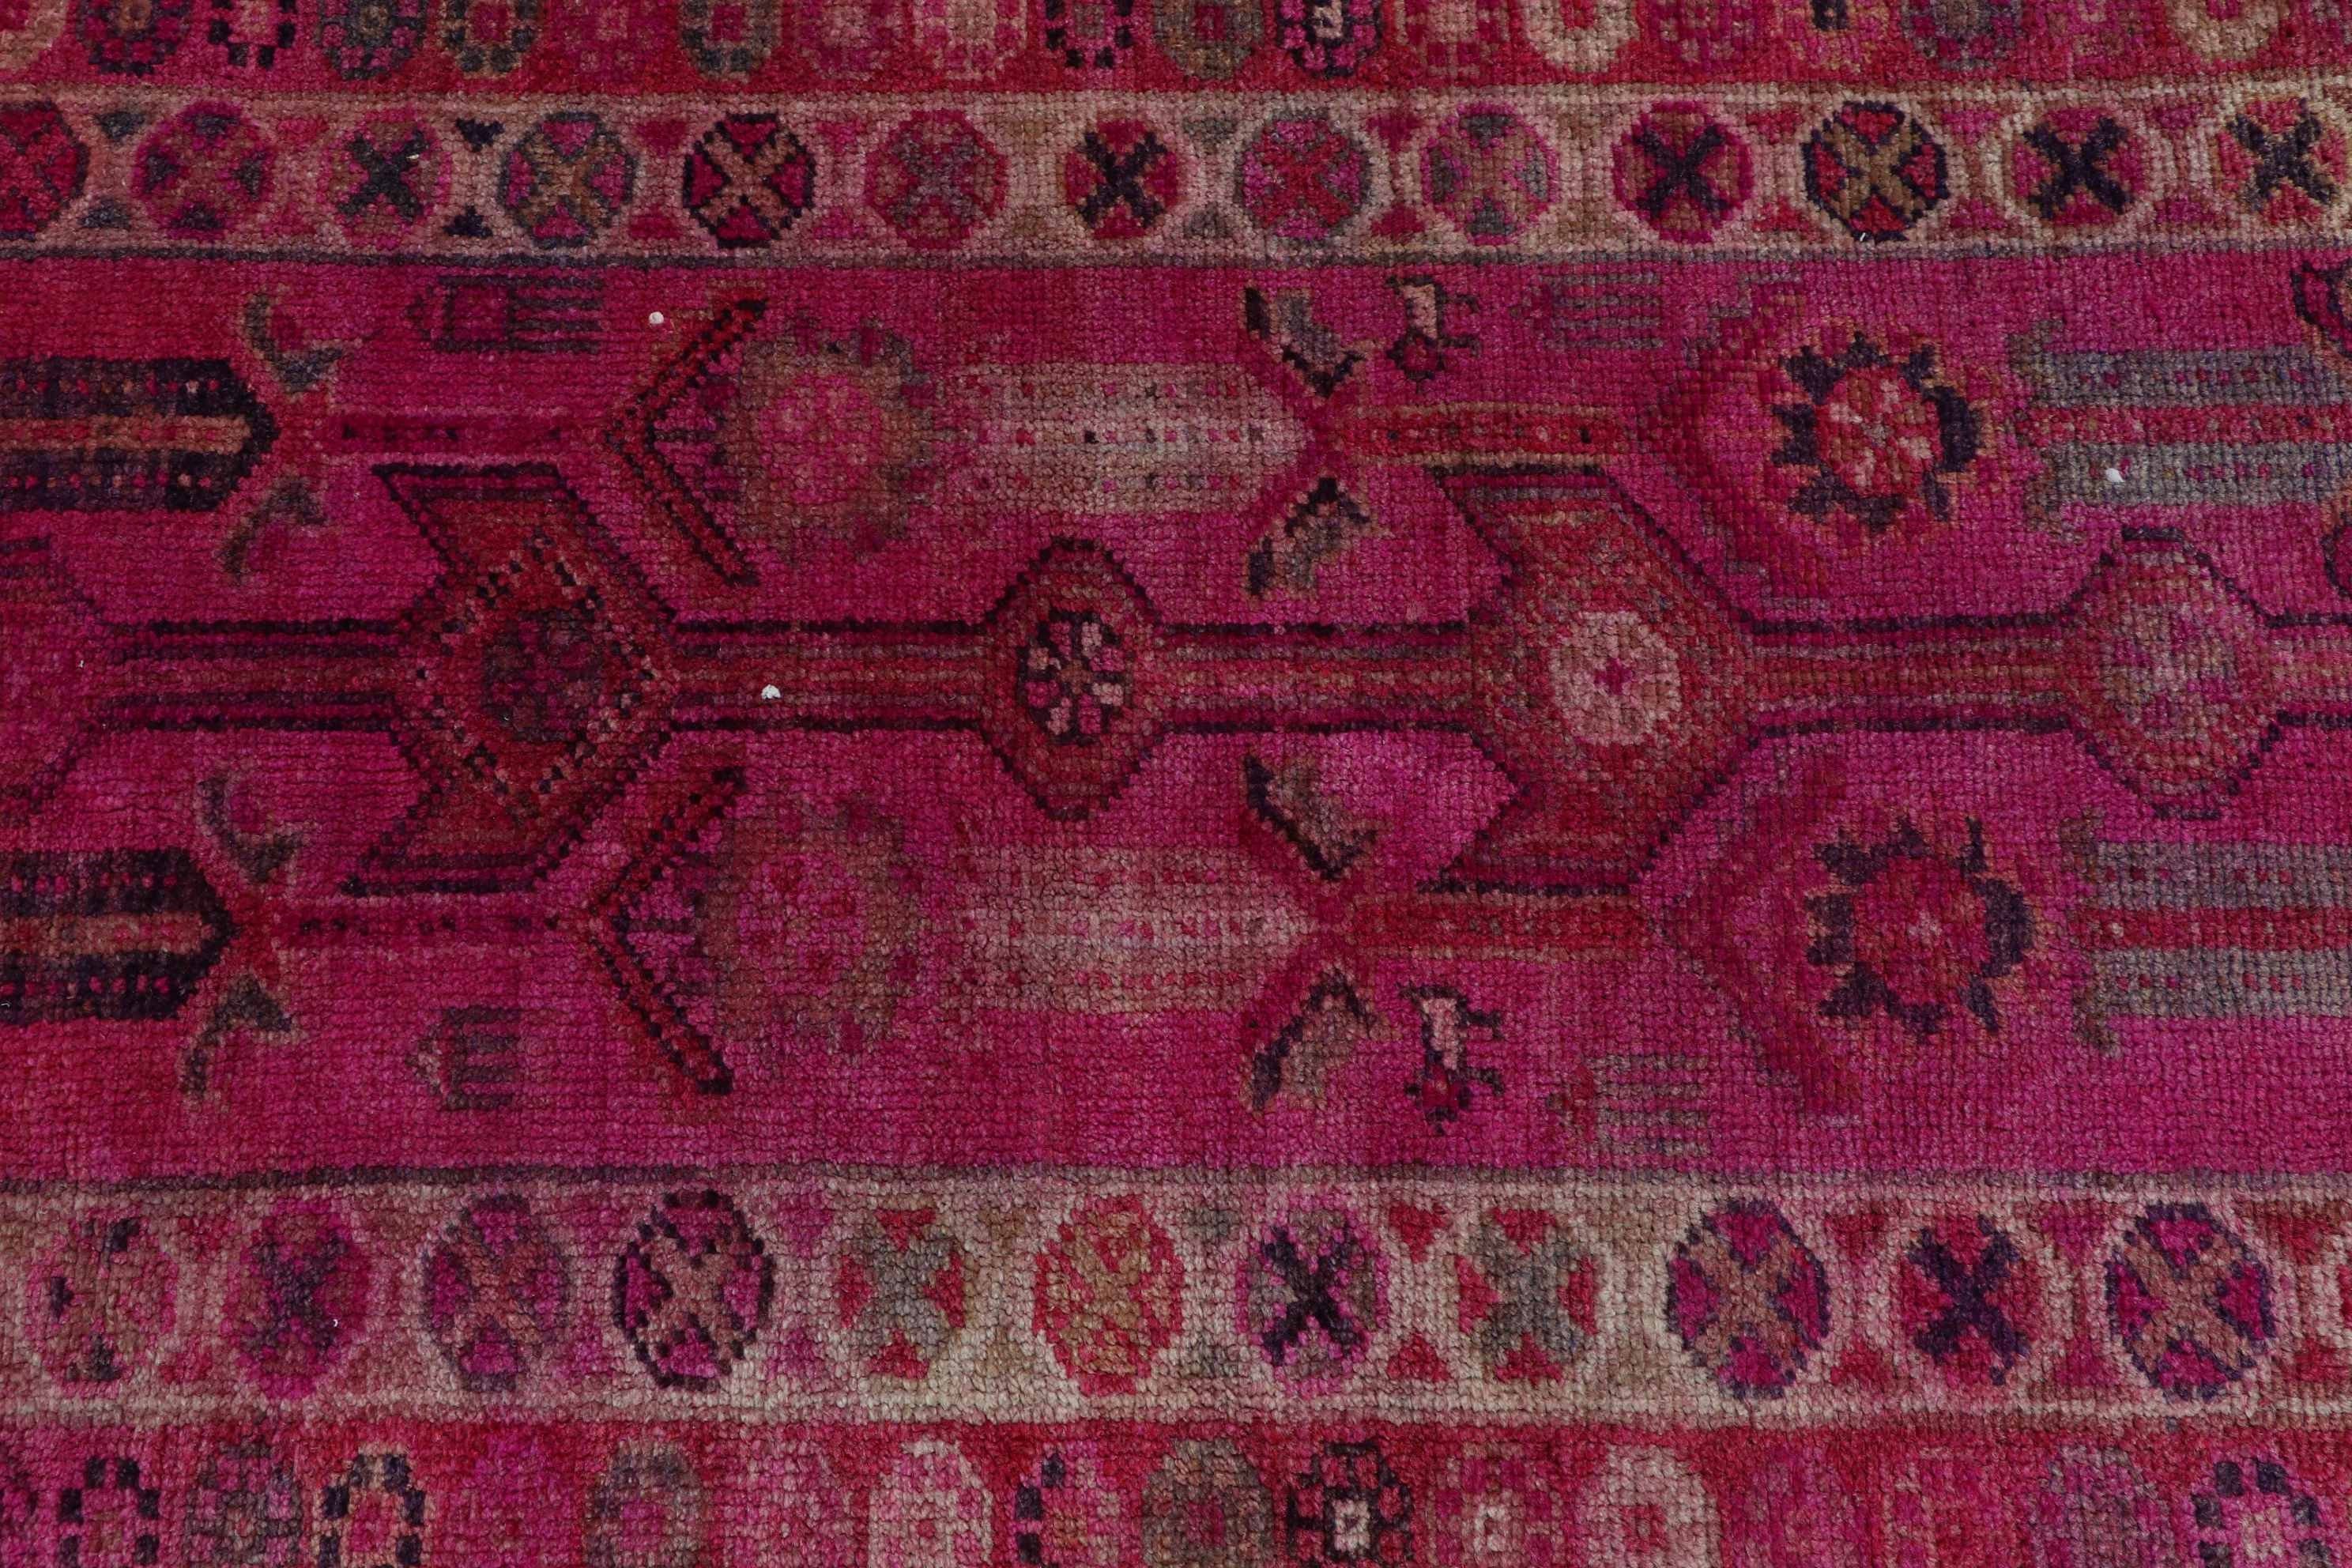 Floor Rugs, Tribal Rugs, Turkish Rug, Stair Rug, Pink Kitchen Rug, Rugs for Hallway, Home Decor Rugs, 2.6x11.8 ft Runner Rugs, Vintage Rugs